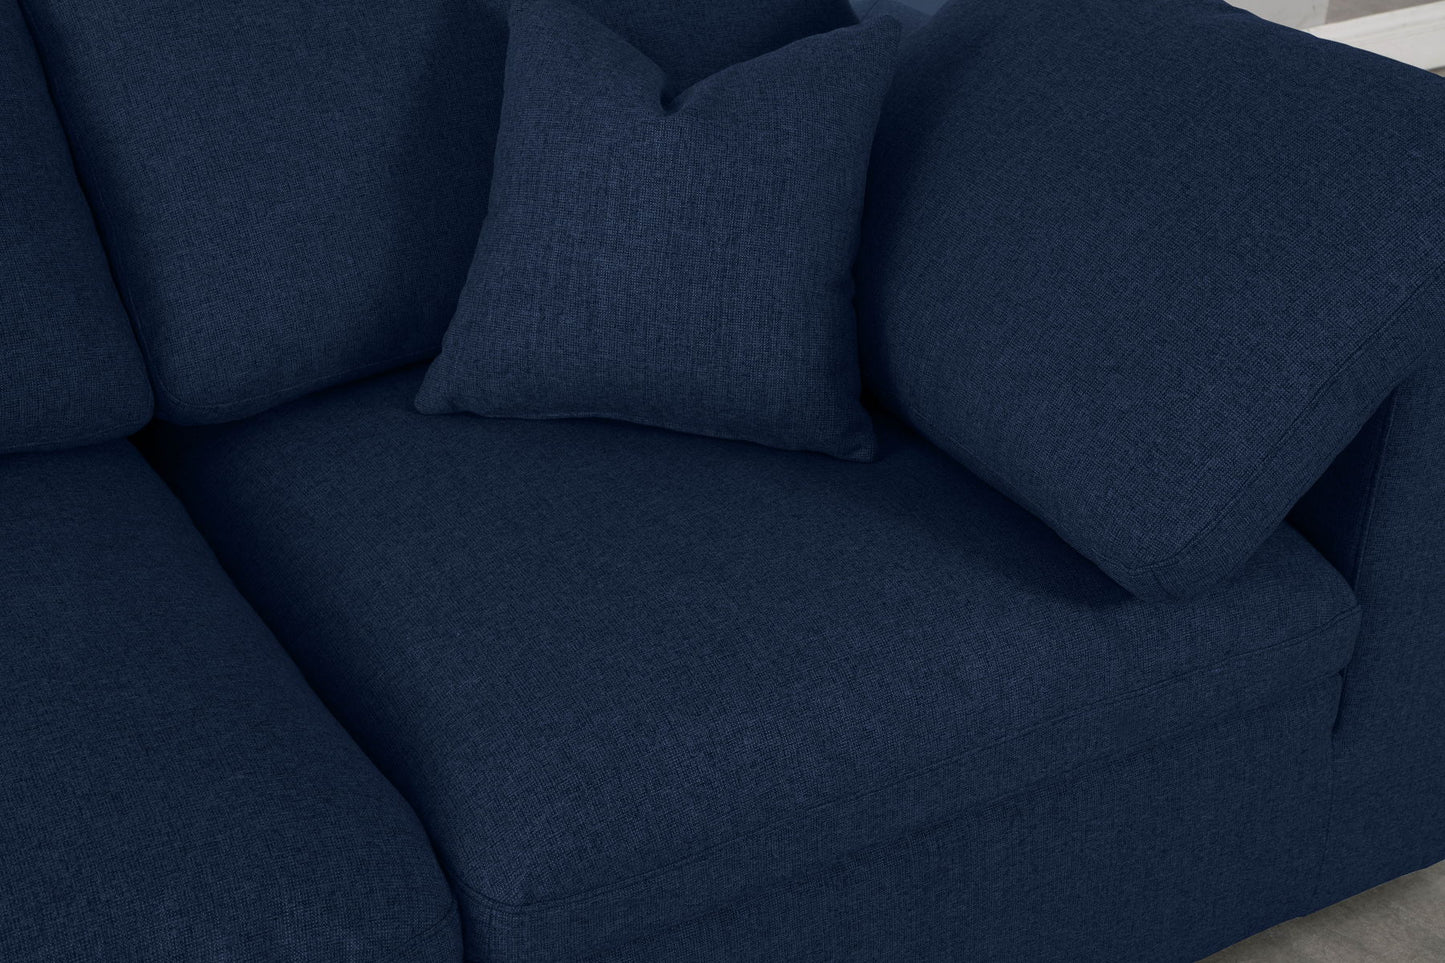 Serene - Modular 3 Seat Sofa